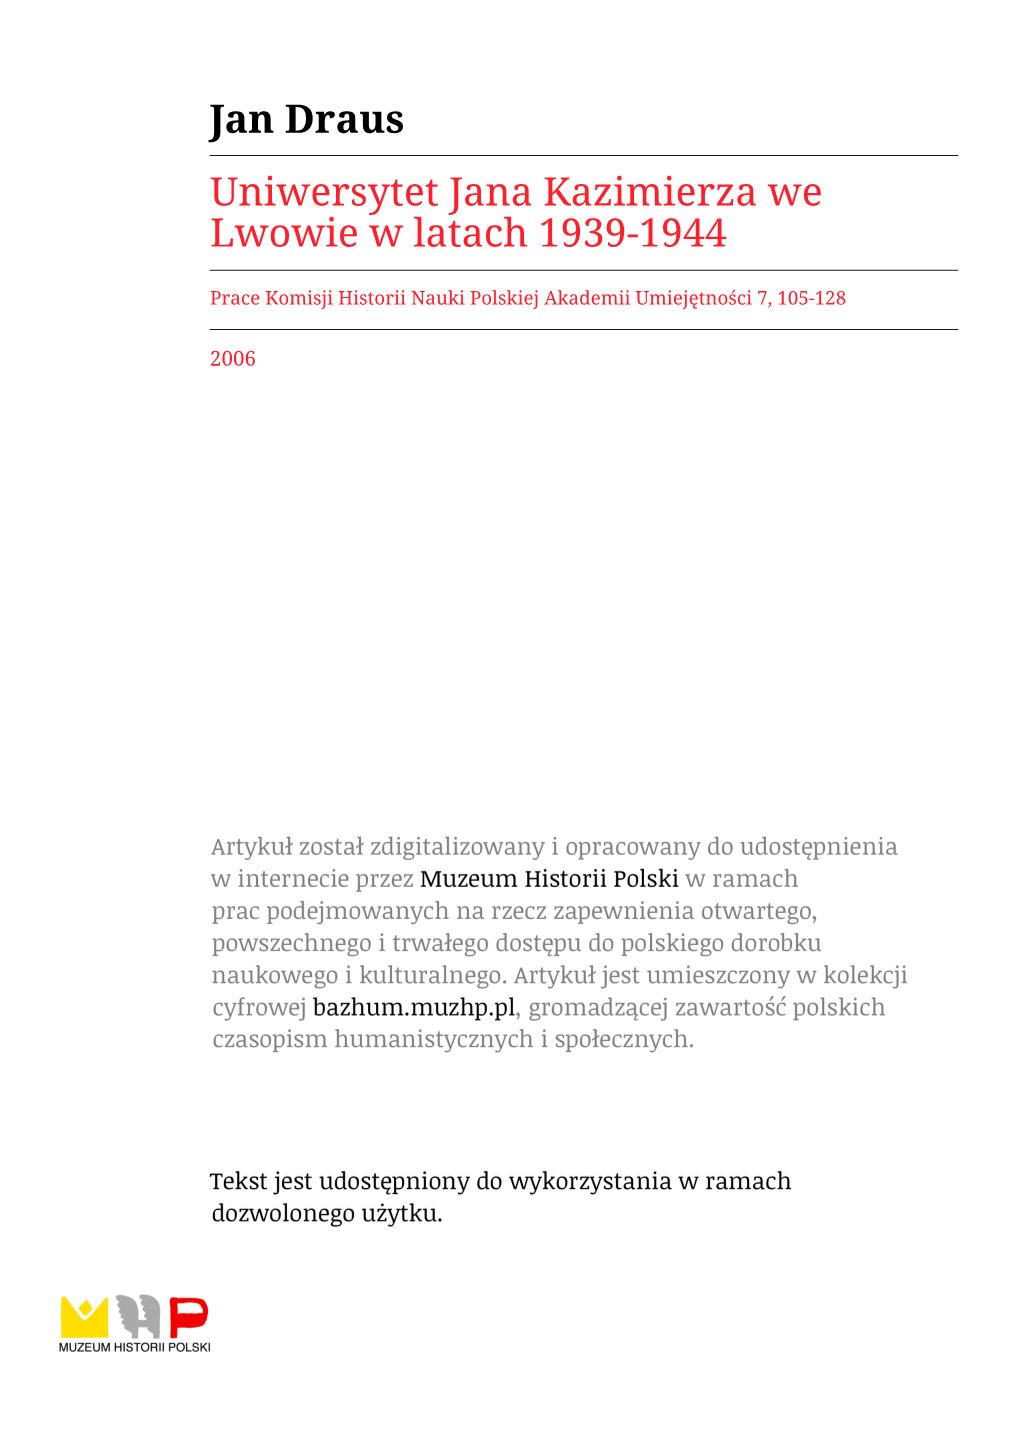 Jan Draus Uniwersytet Jana Kazimierza We Lwowie W Latach 1939-1944